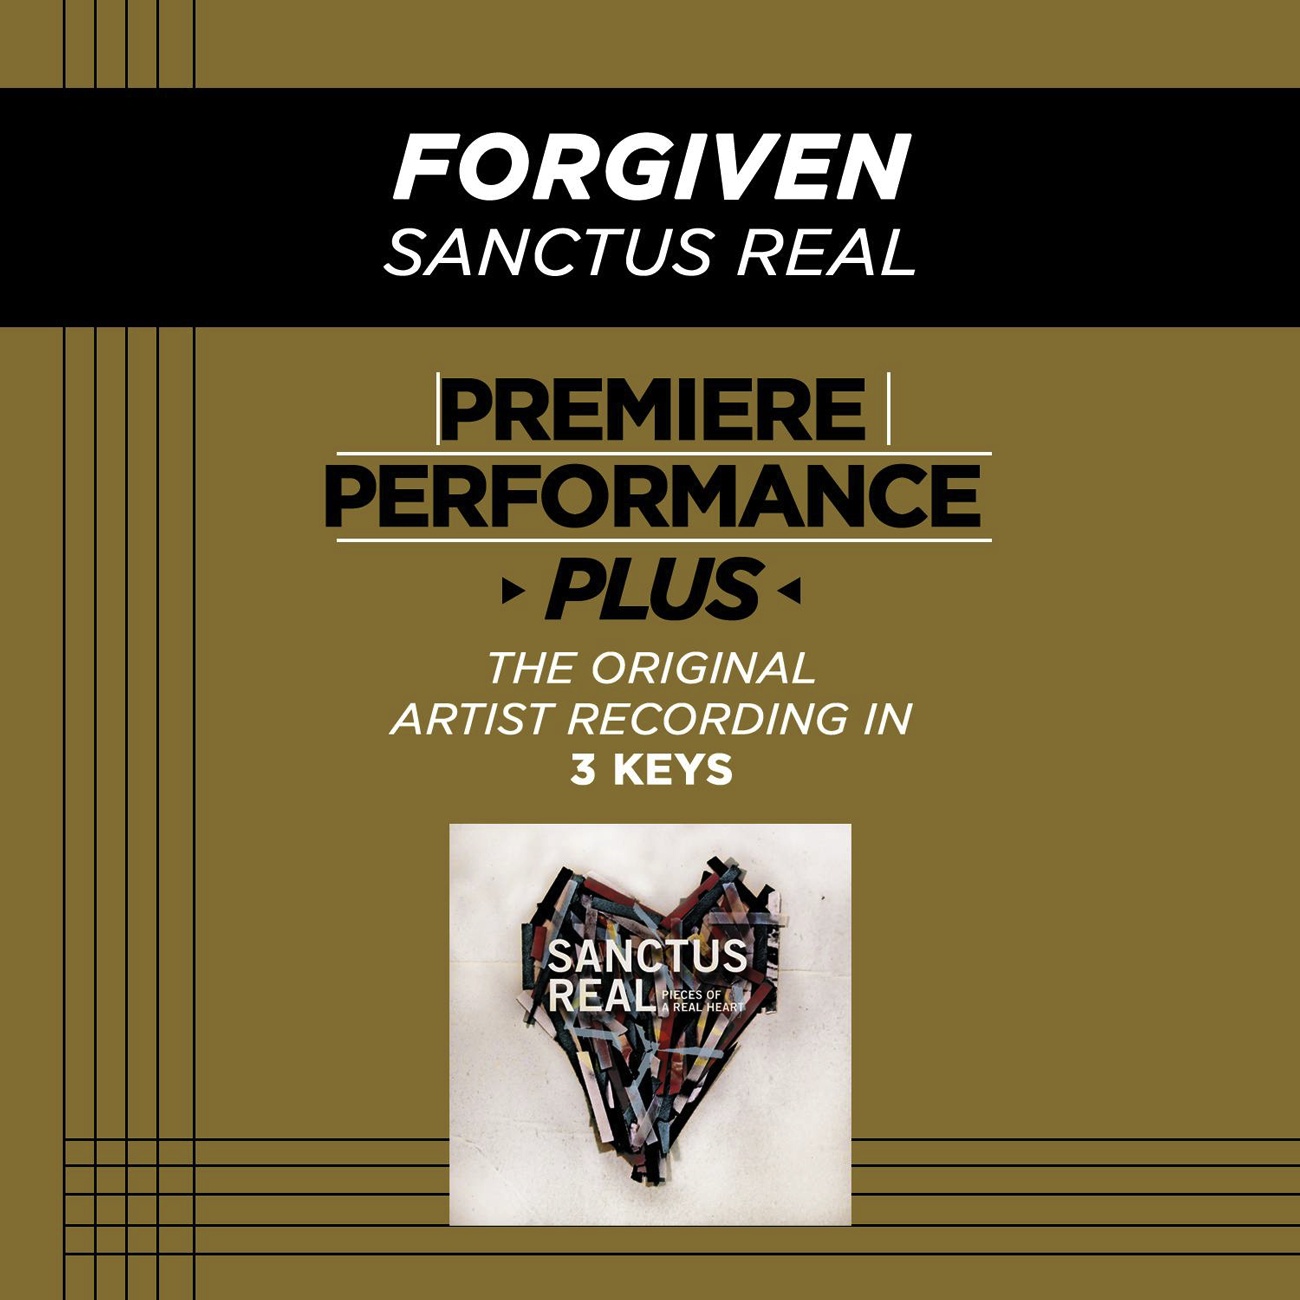 Premiere Performance Plus: Forgiven